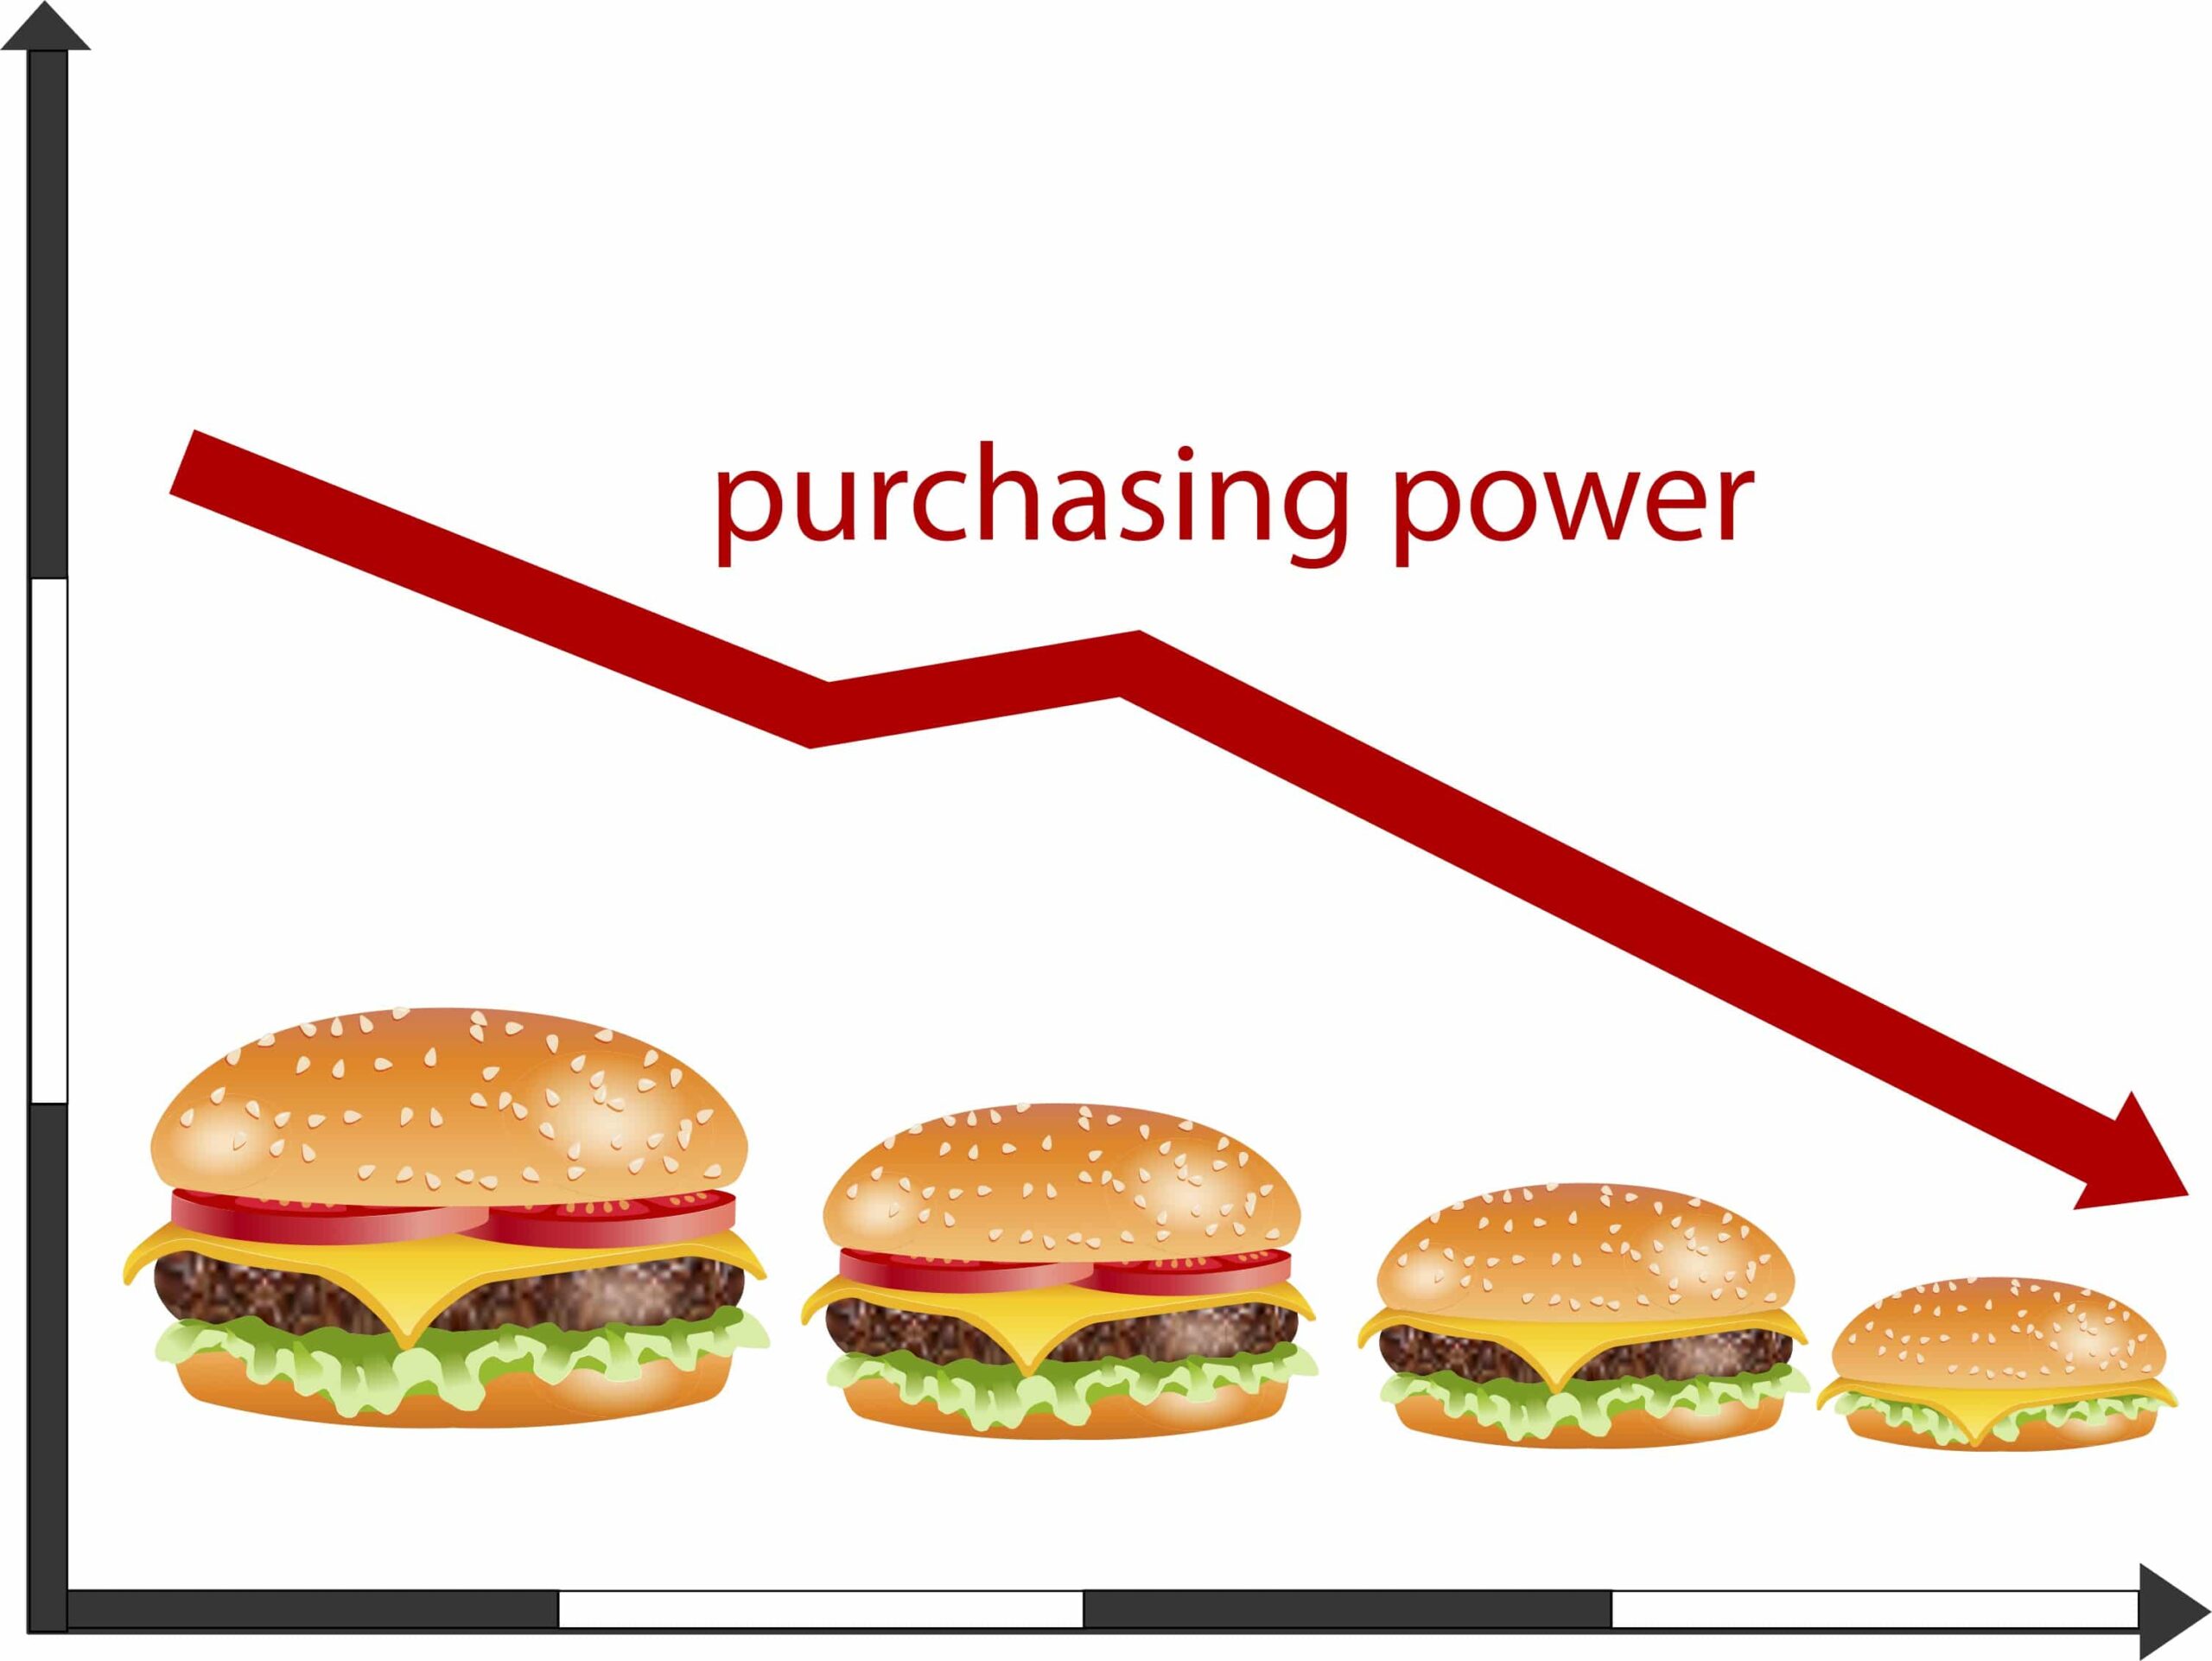 Hamburger inflation